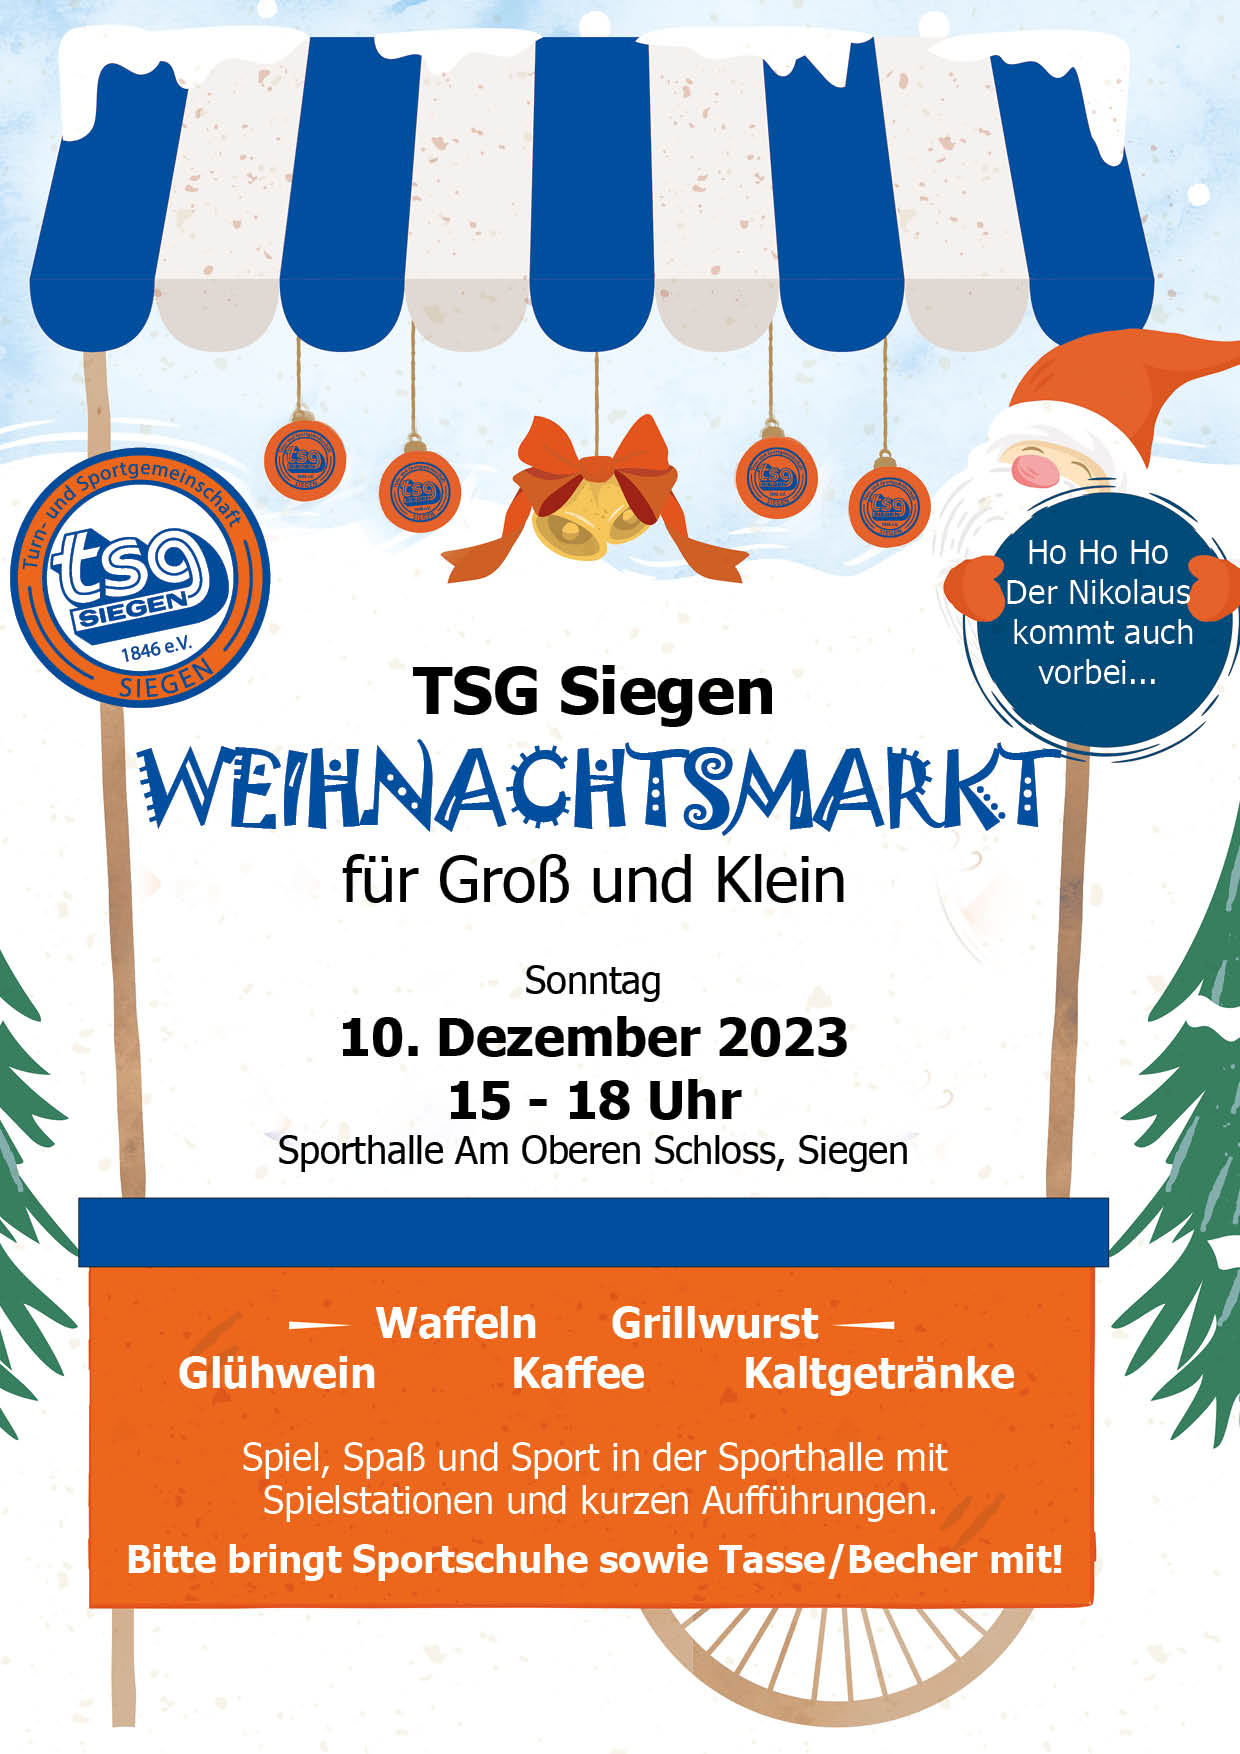 TSG Weihnachtsmarkt am 10. Dezember 2023